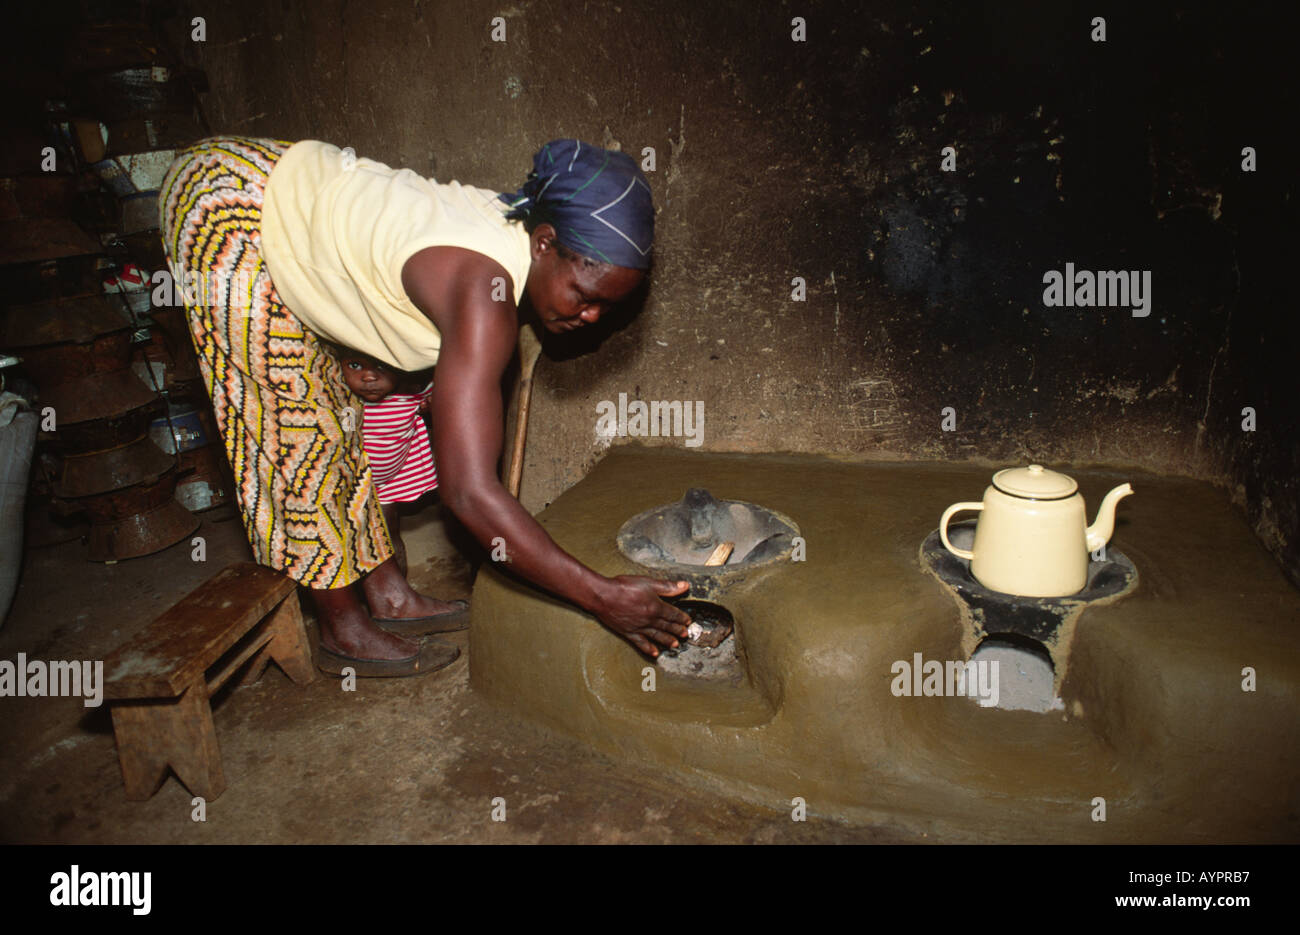 Femme éclairant son nouveau poêle amélioré, économe en carburant, fait d'argile par la coopérative de femmes locales. Kisumu, Kenya Banque D'Images